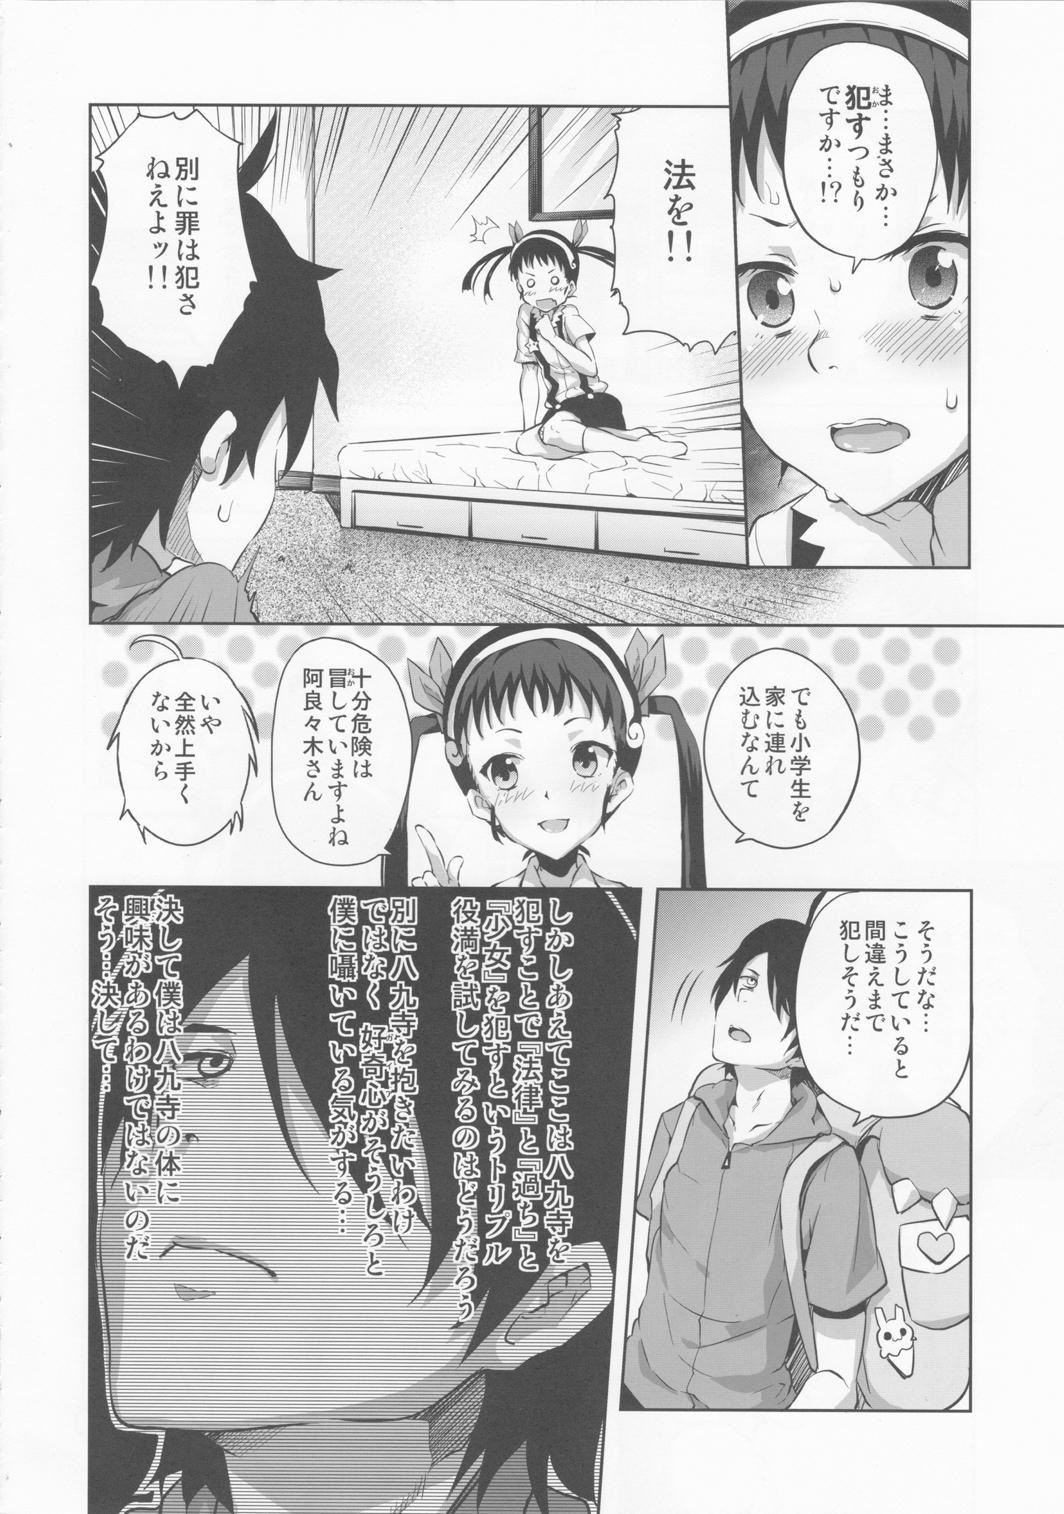 Cocksucking Namekuji Mayoigatari - Bakemonogatari Camgirls - Page 5